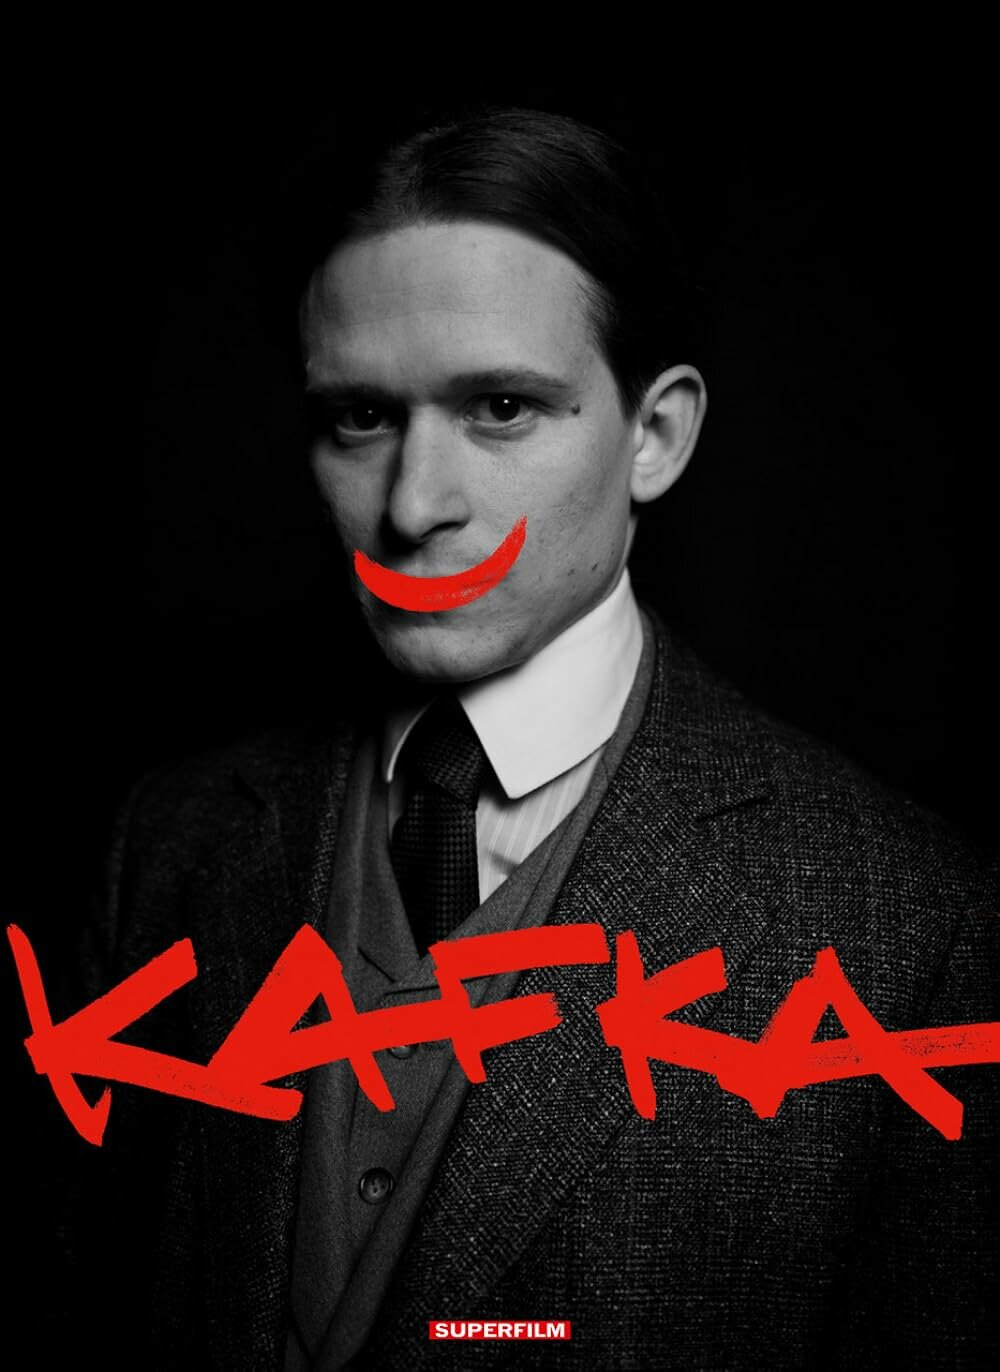 Kafka ne zaman